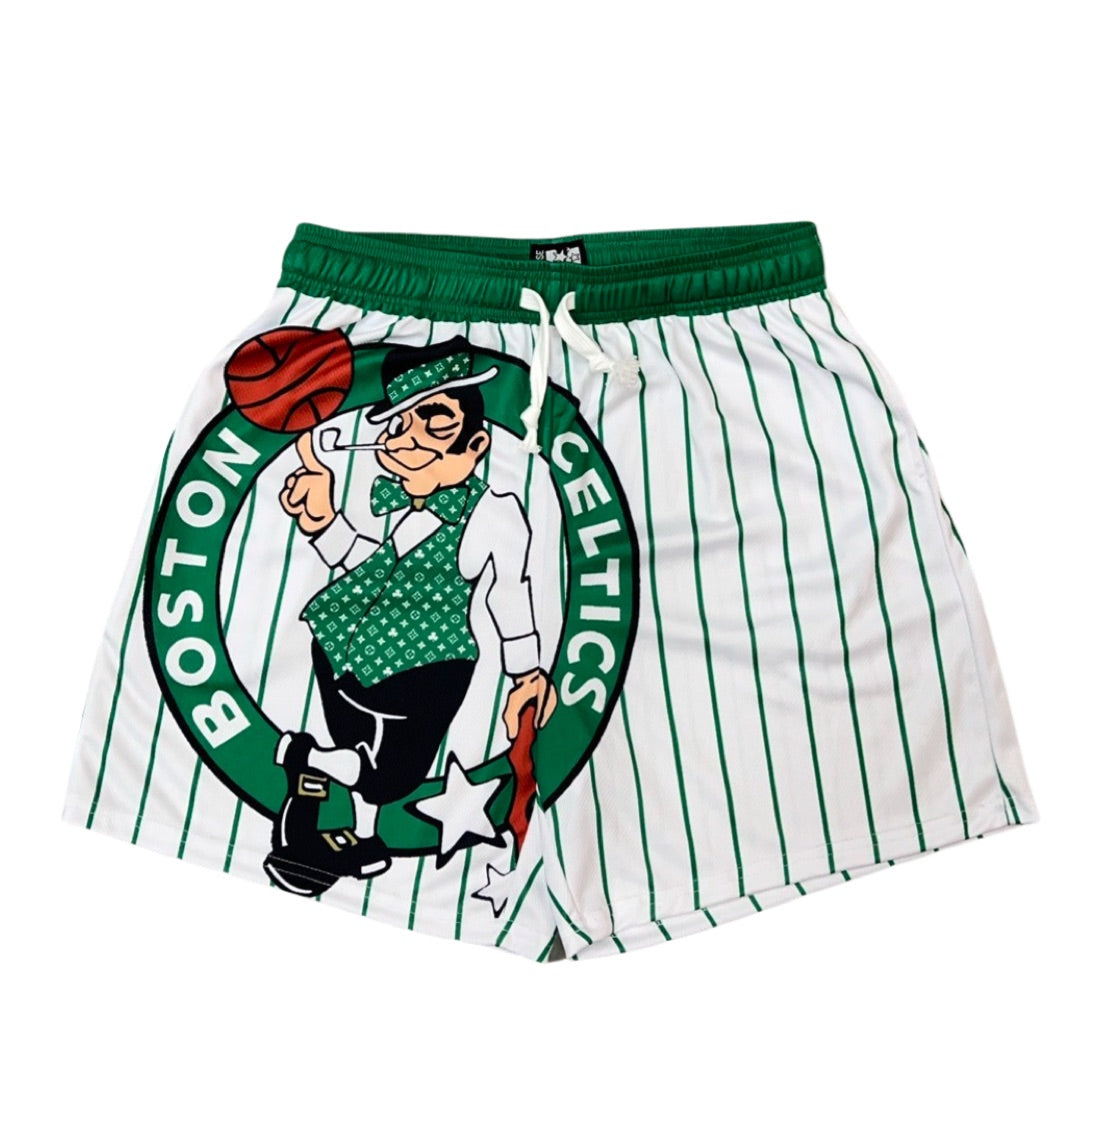 Bos Celtics (Premise) Mesh Shorts X-Large